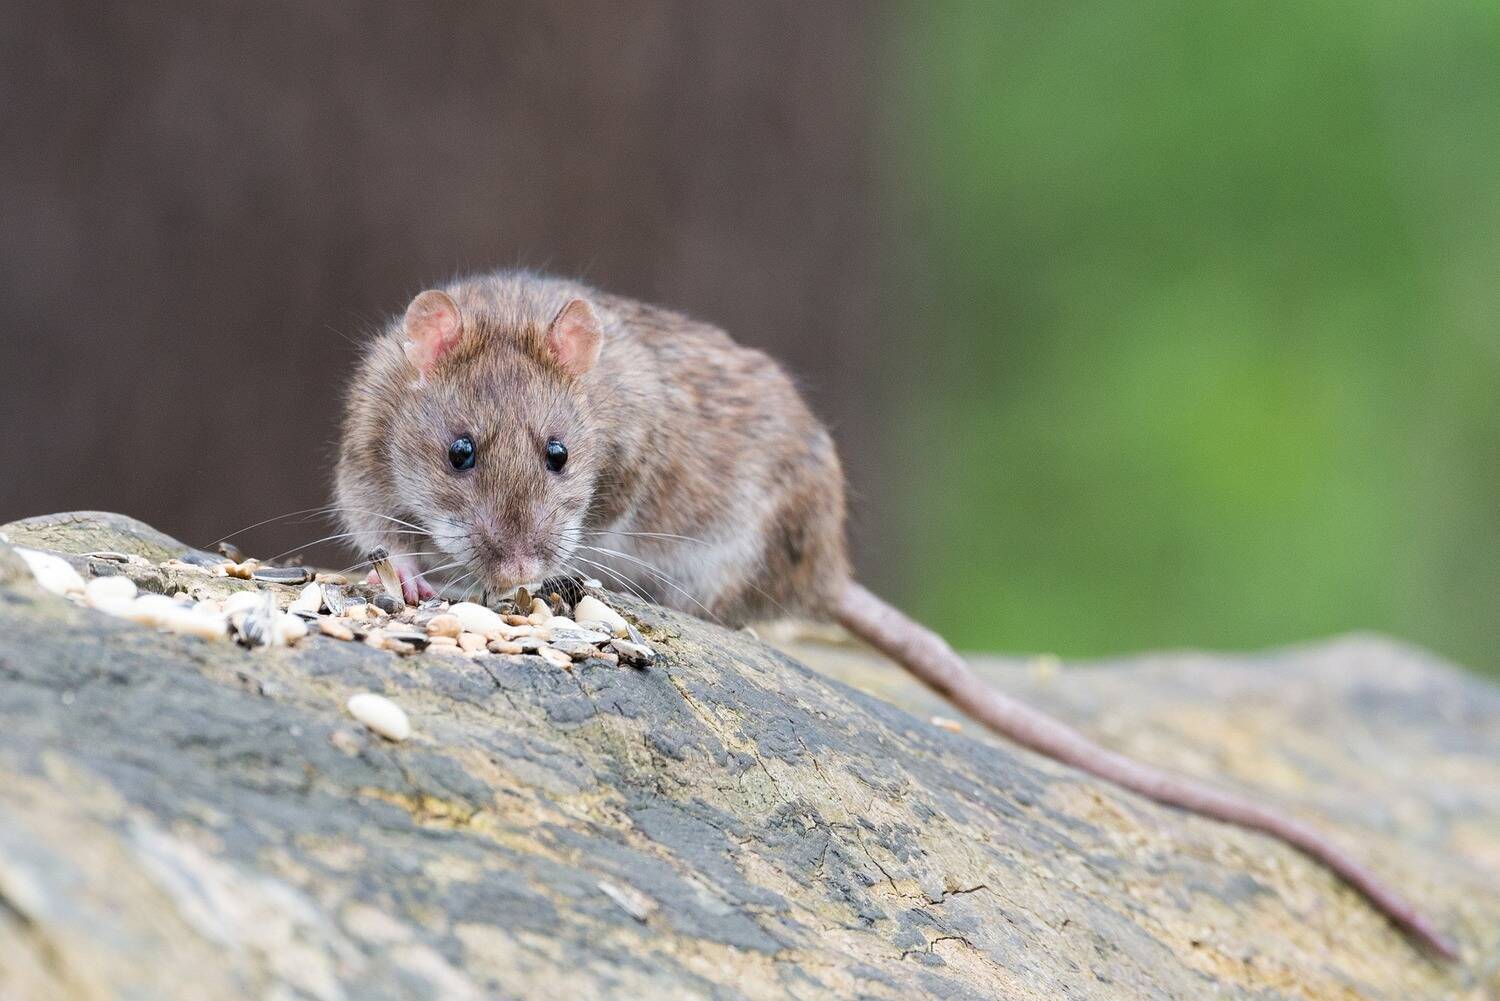 G1 - Ratos gigantes assustam moradores no Reino Unido - notícias